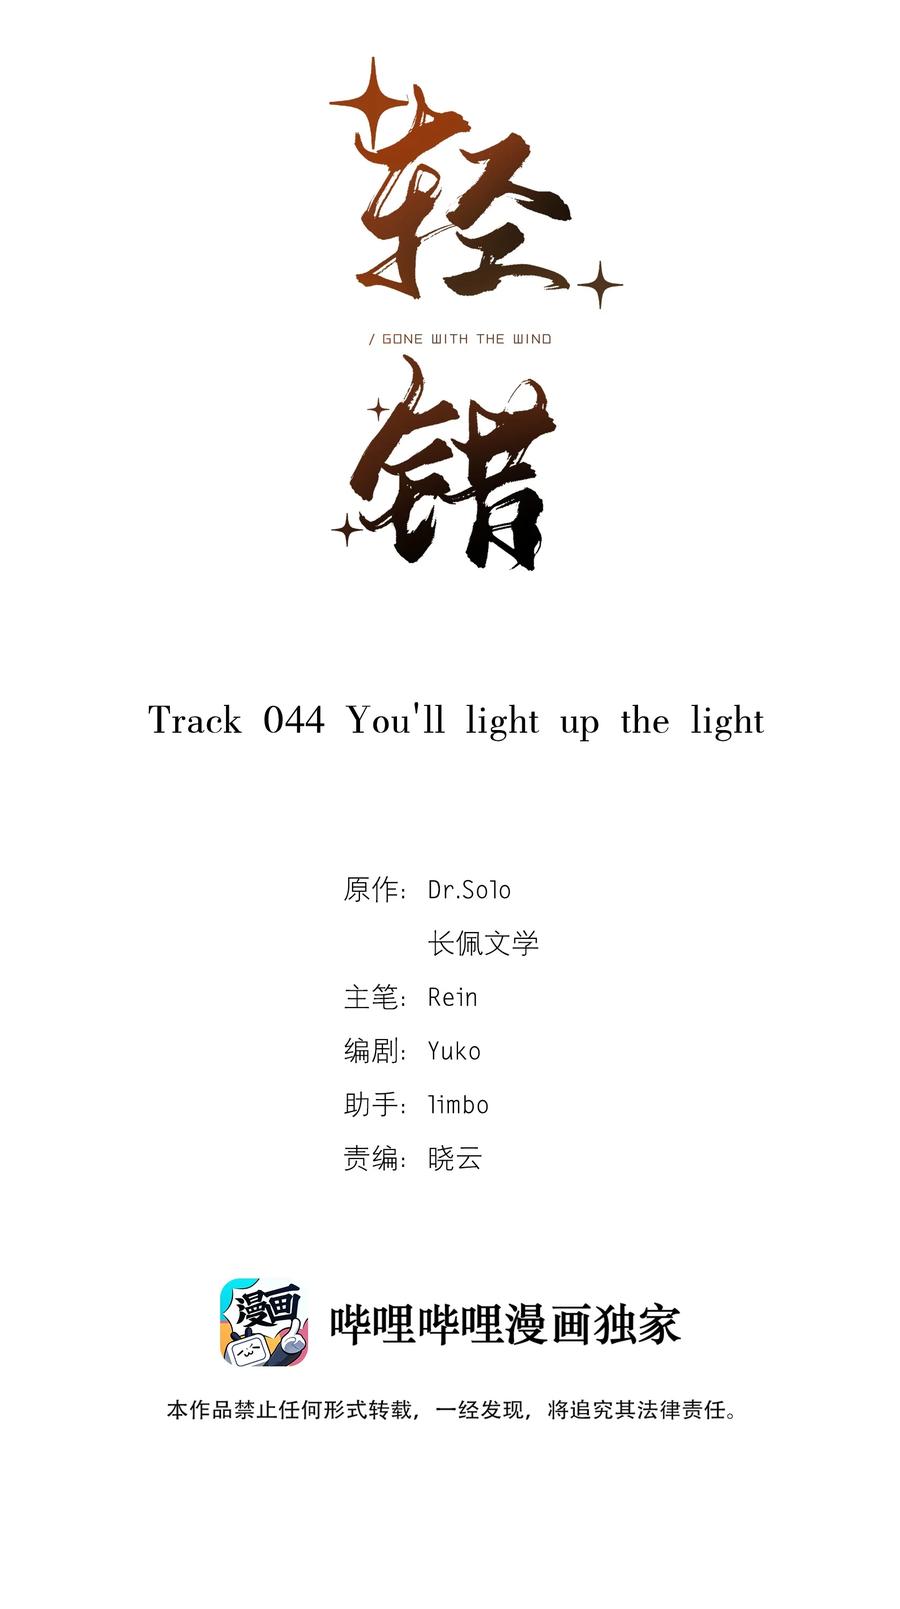 轻错 - Track044 You'll light up the light - 2